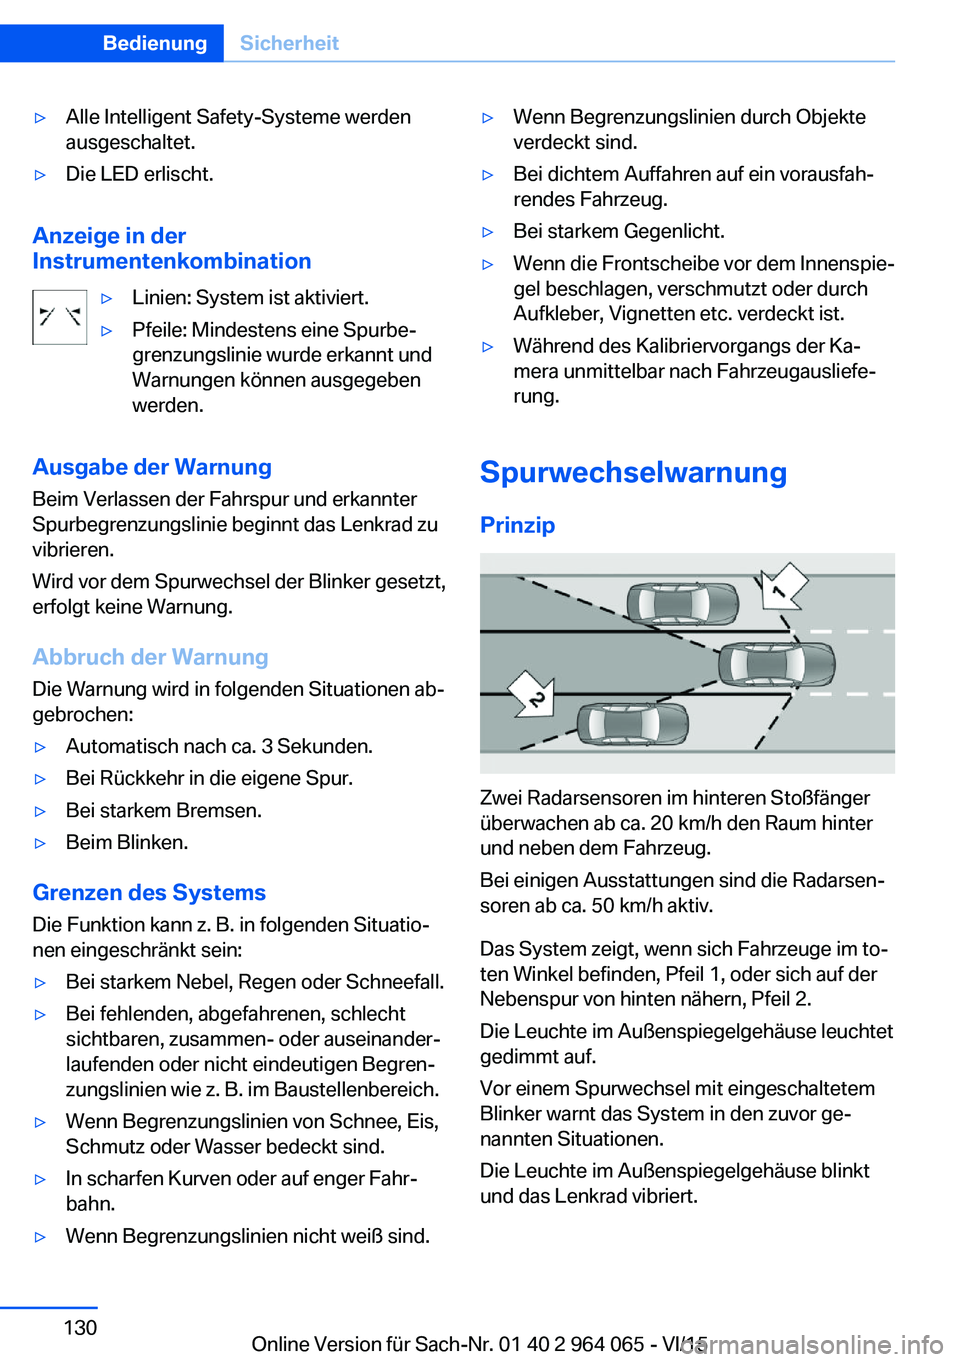 BMW X6 M 2016  Betriebsanleitungen (in German) ▷Alle Intelligent Safety-Systeme werden
ausgeschaltet.▷Die LED erlischt.
Anzeige in der
Instrumentenkombination
▷Linien: System ist aktiviert.▷Pfeile: Mindestens eine Spurbe‐
grenzungslinie 